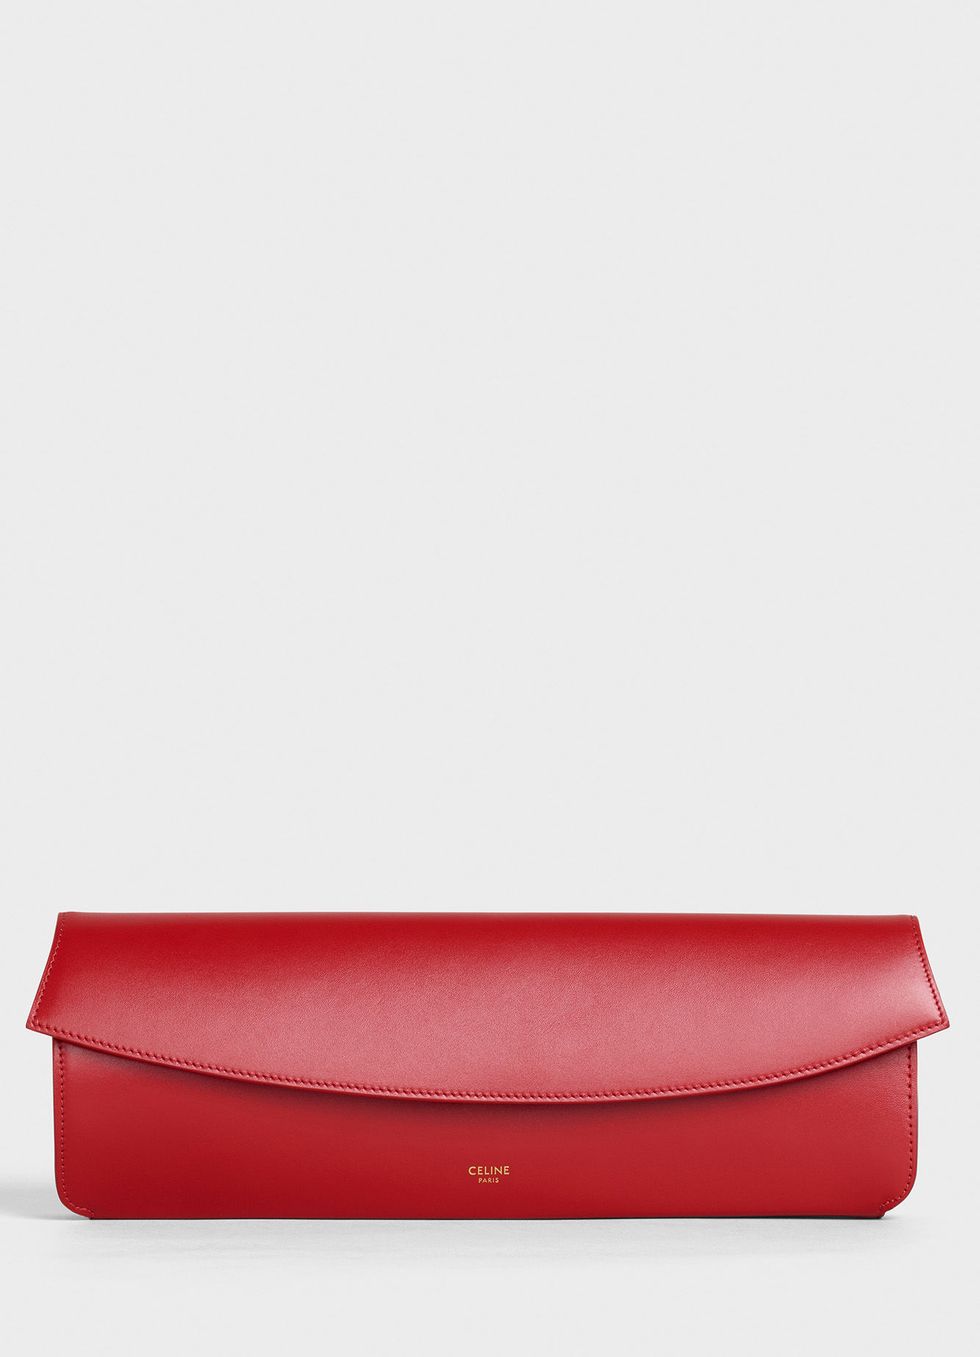 pochette rossa, pochette da sera, pochette Celine, borsa Celine, moda borse 2019